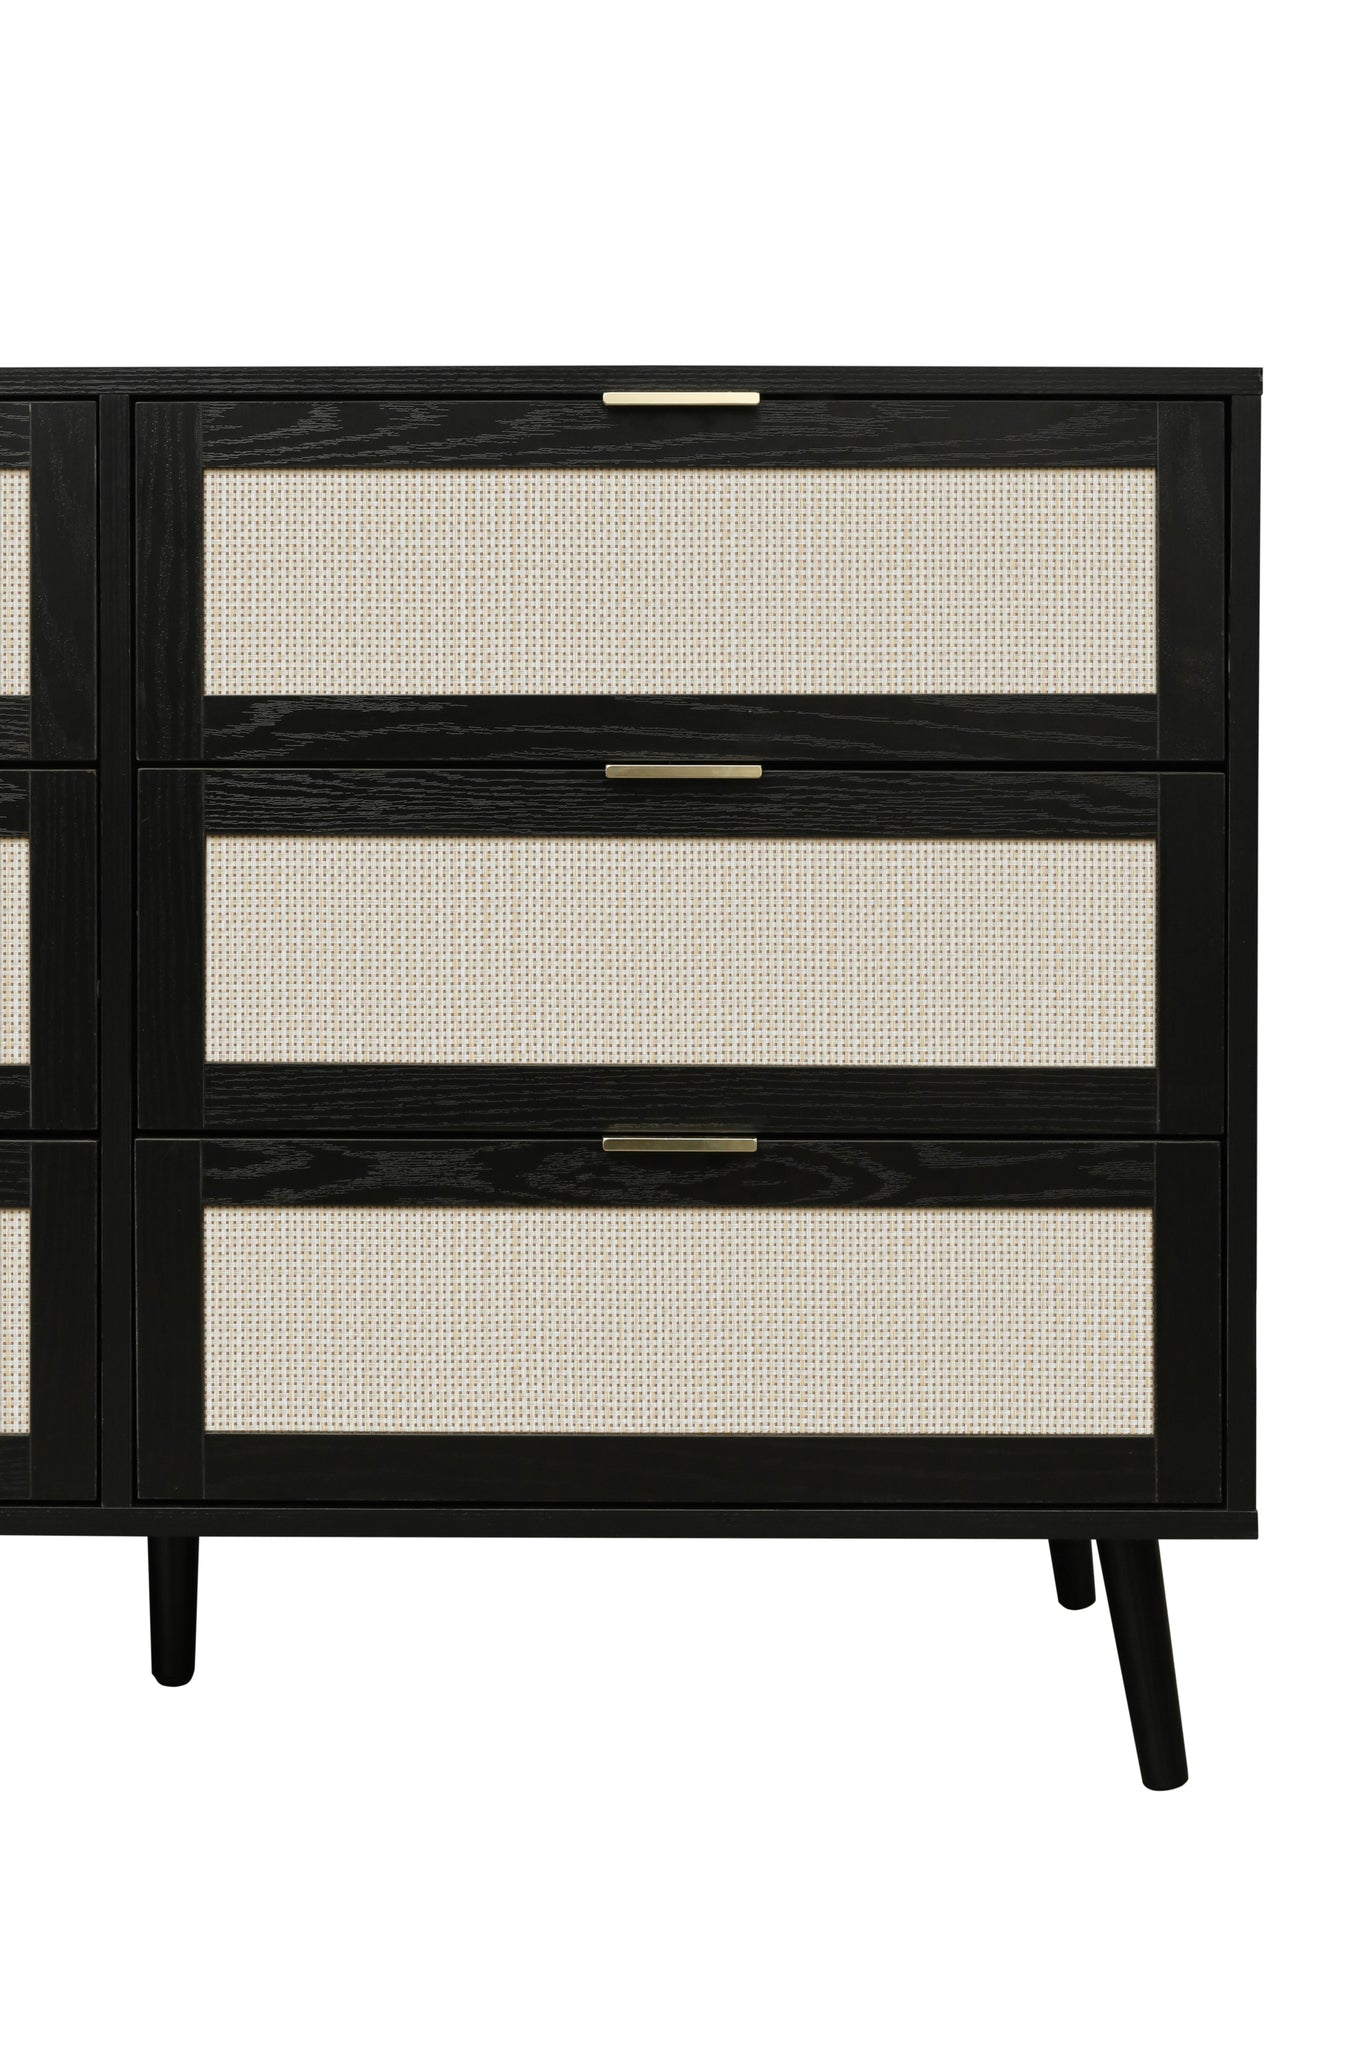 Modern 6 Drawer Dresser Wood Cabinet Black black-particle board